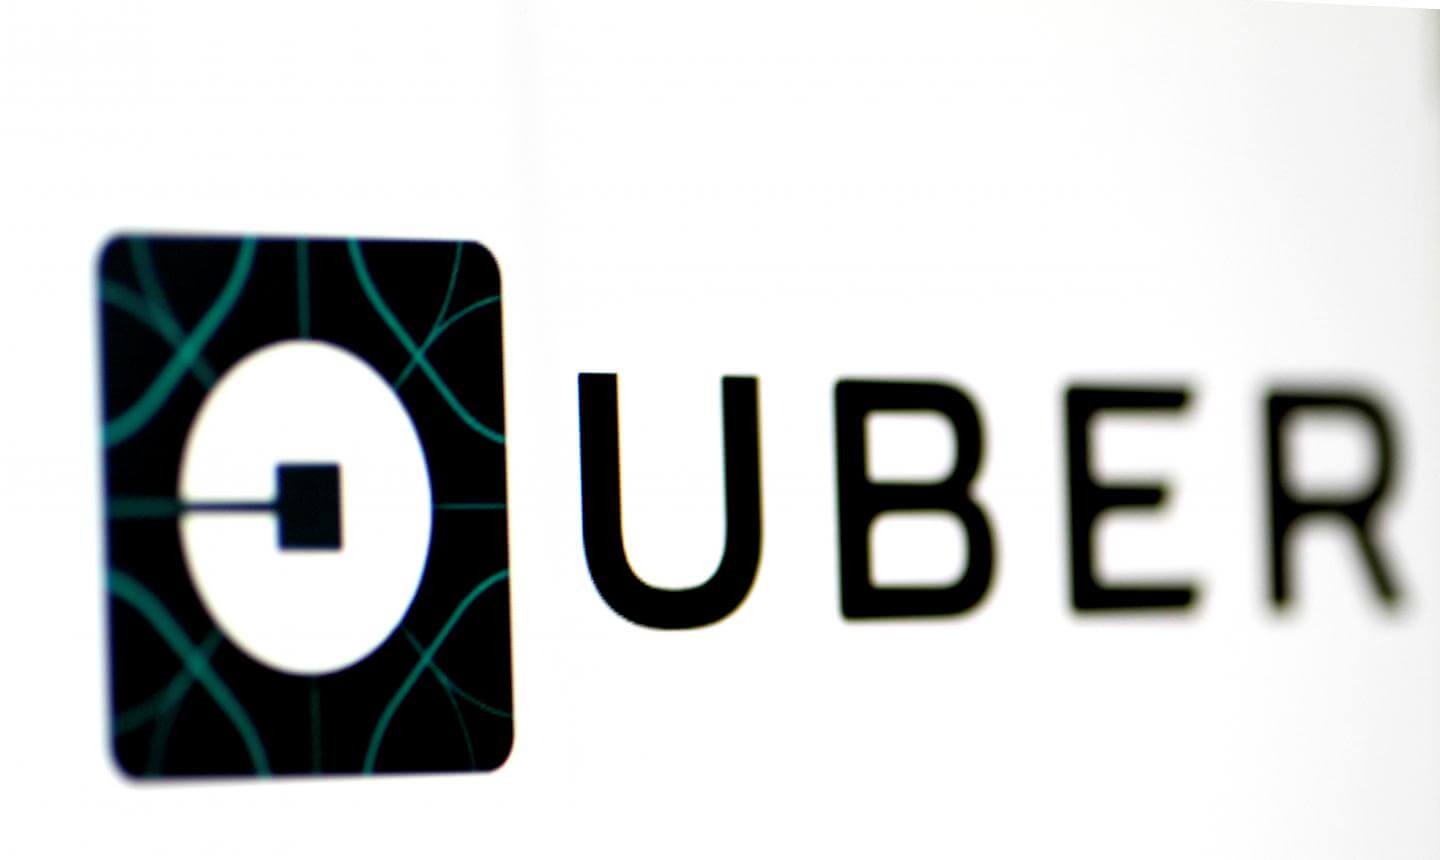 Uber abre vagas de estágio para qualquer curso universitário